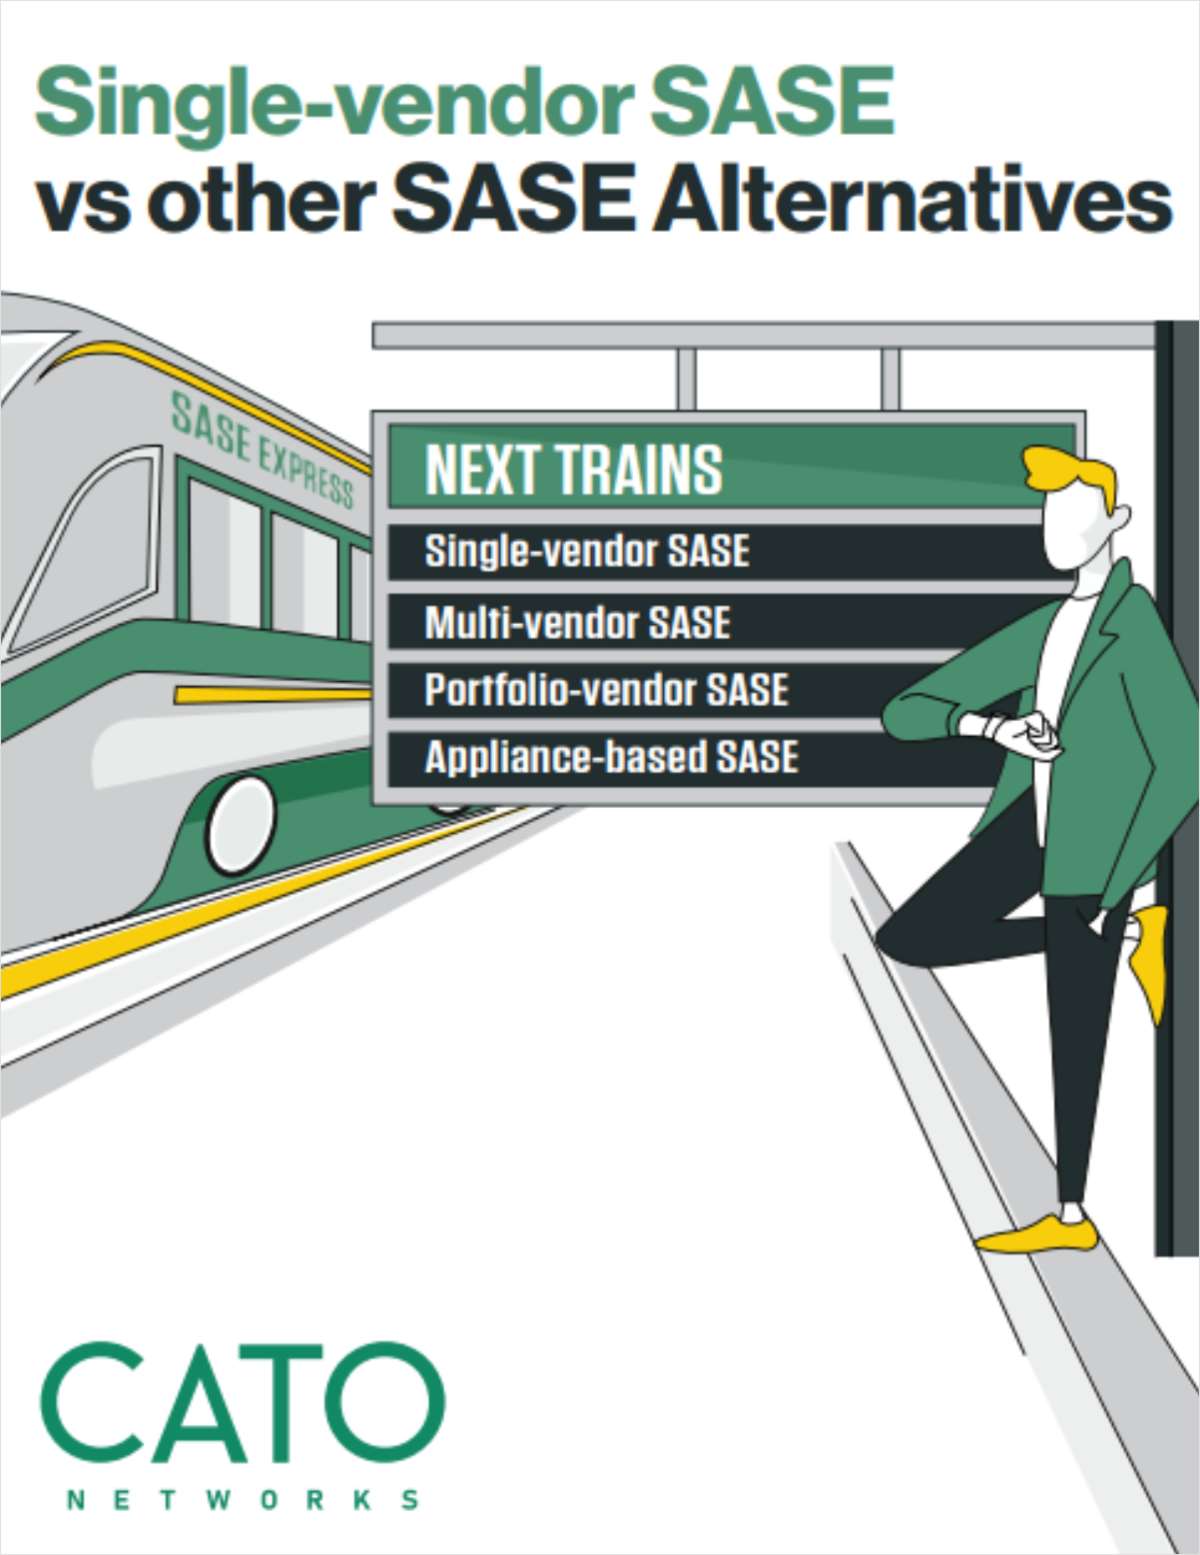 Single vendor SASE vs SASE Alternatives